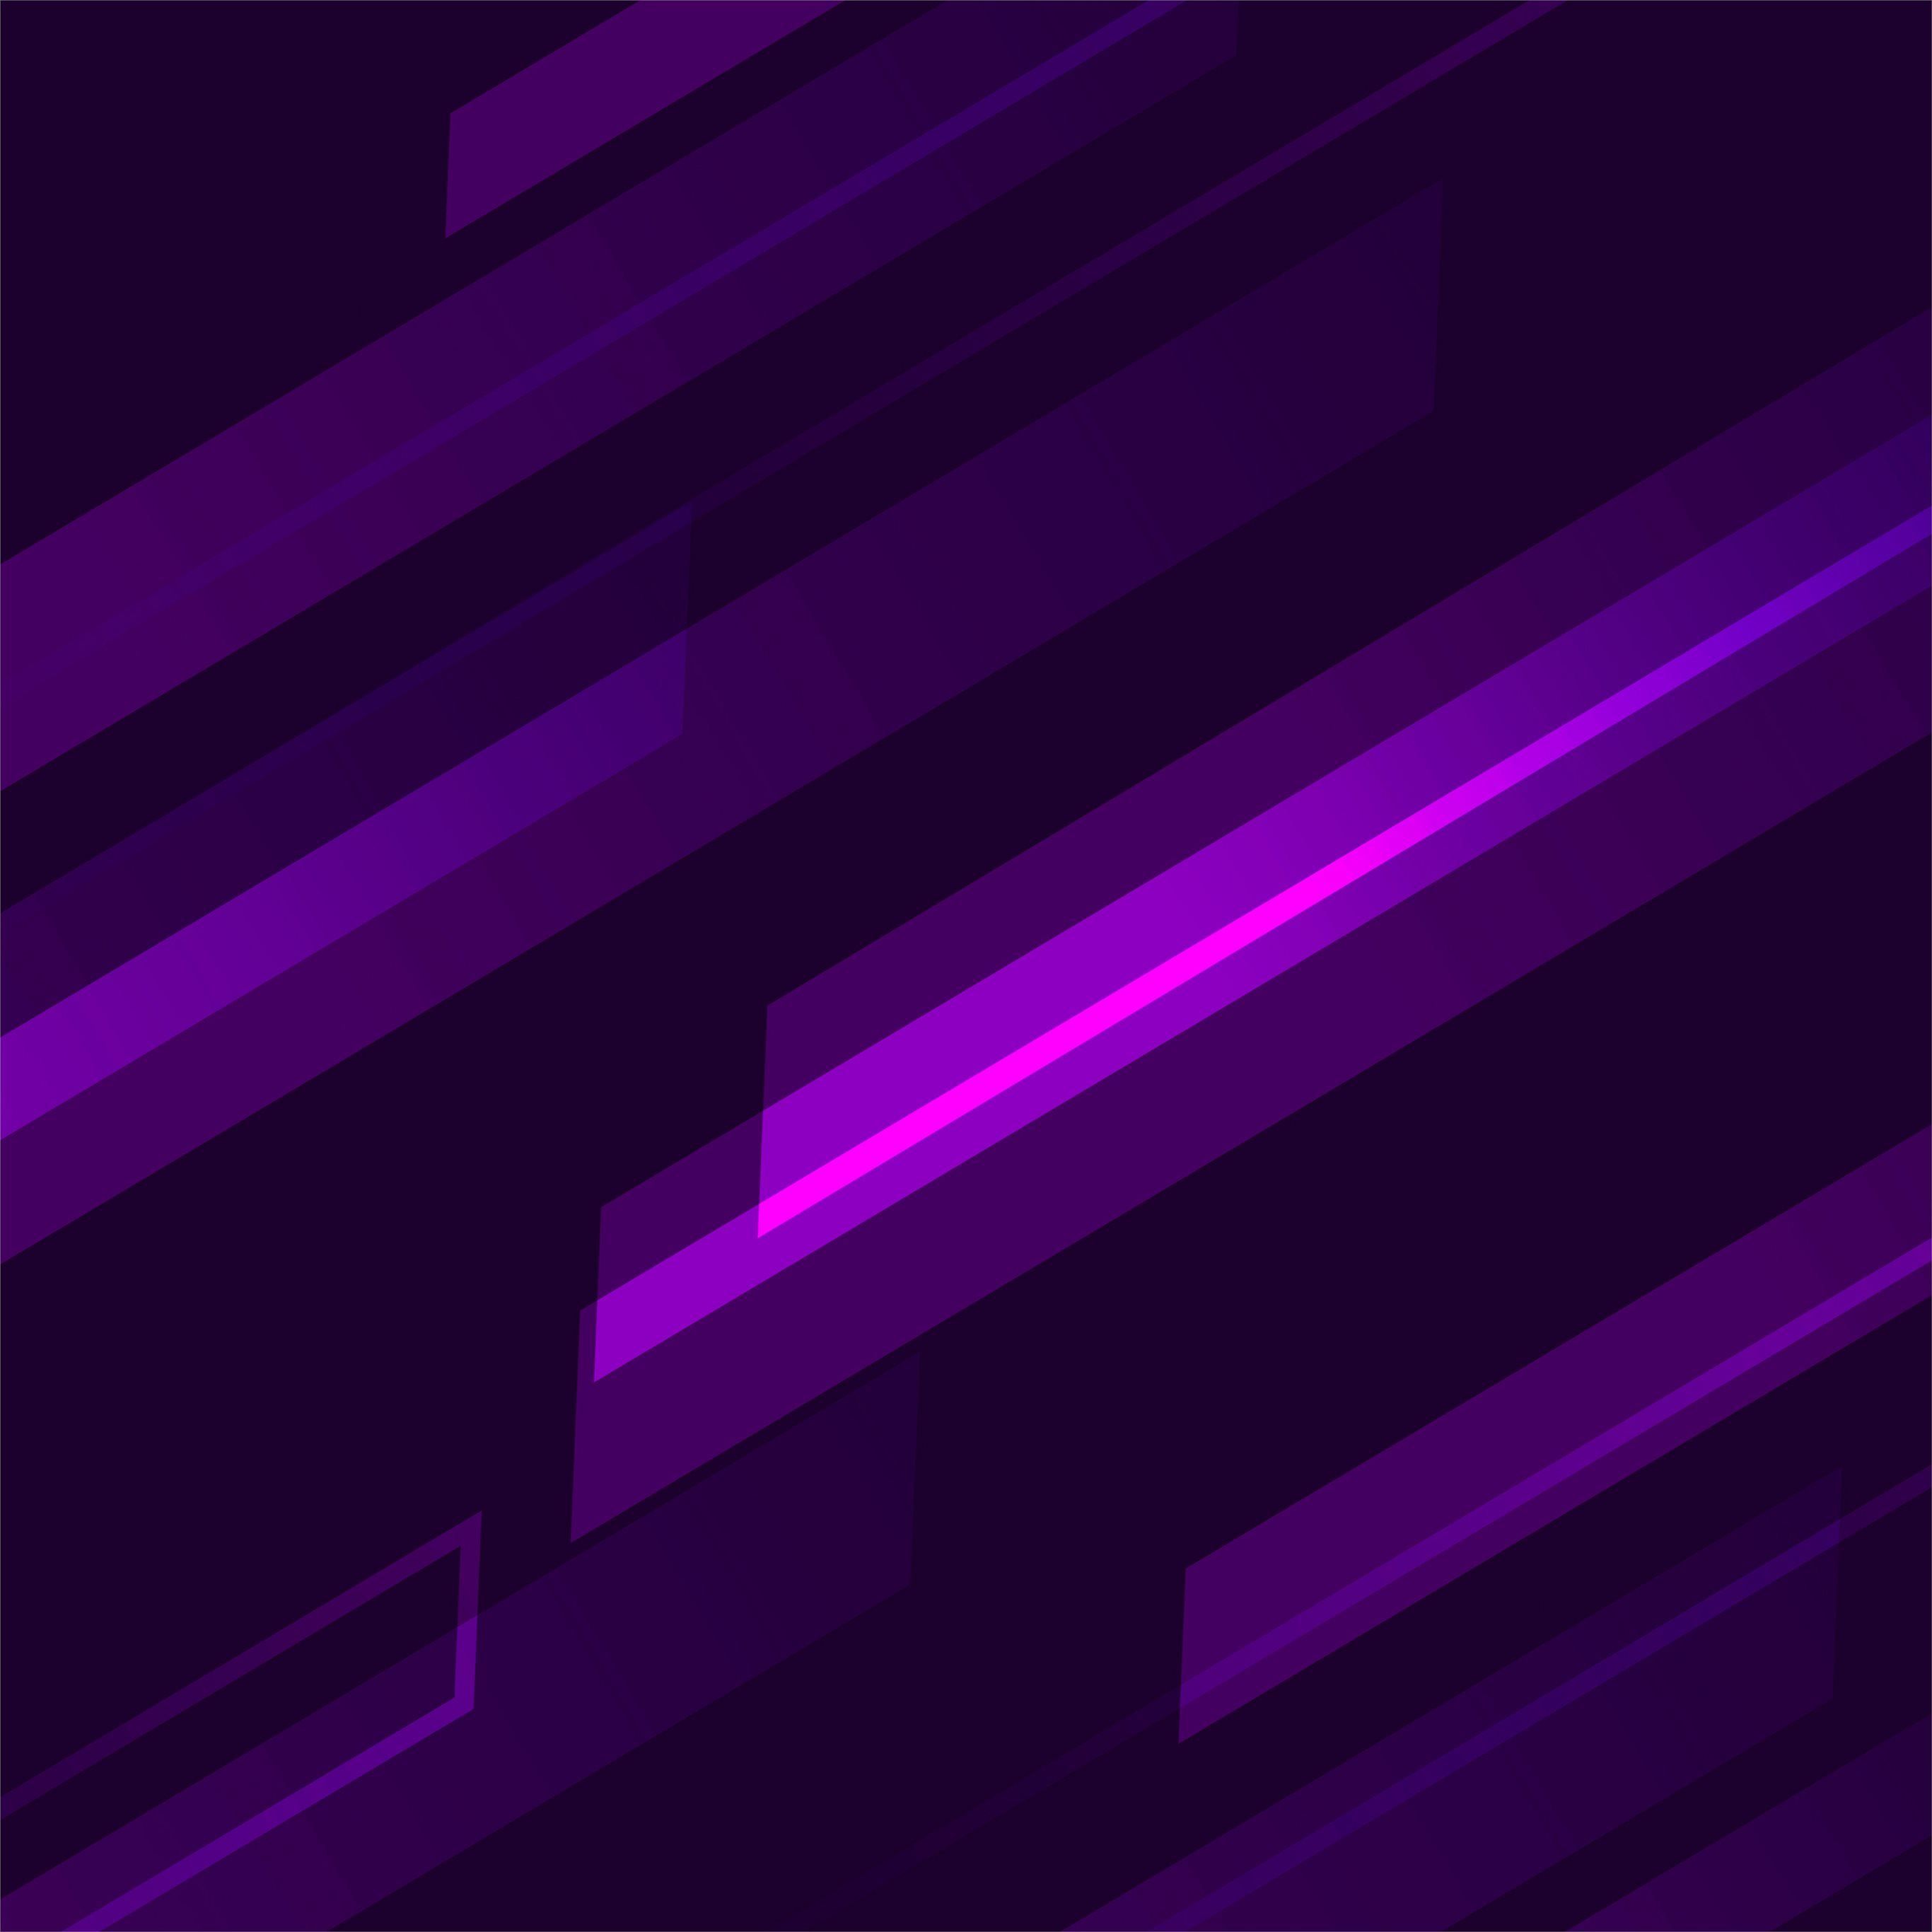 stripes dark purple iPad Pro Wallpaper Free Download